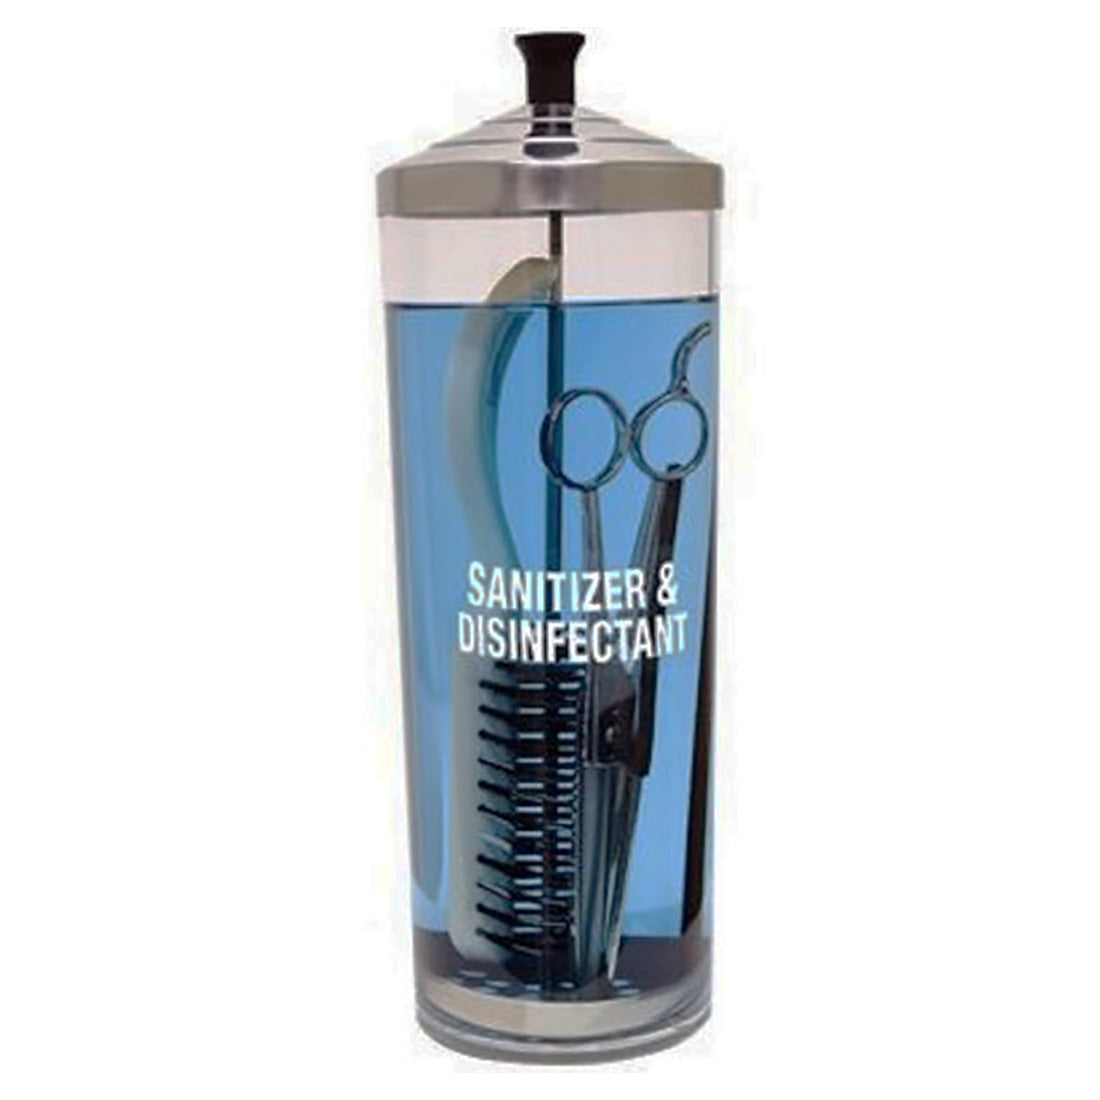 Scalpmaster Sanitizing Jar in Acrylic